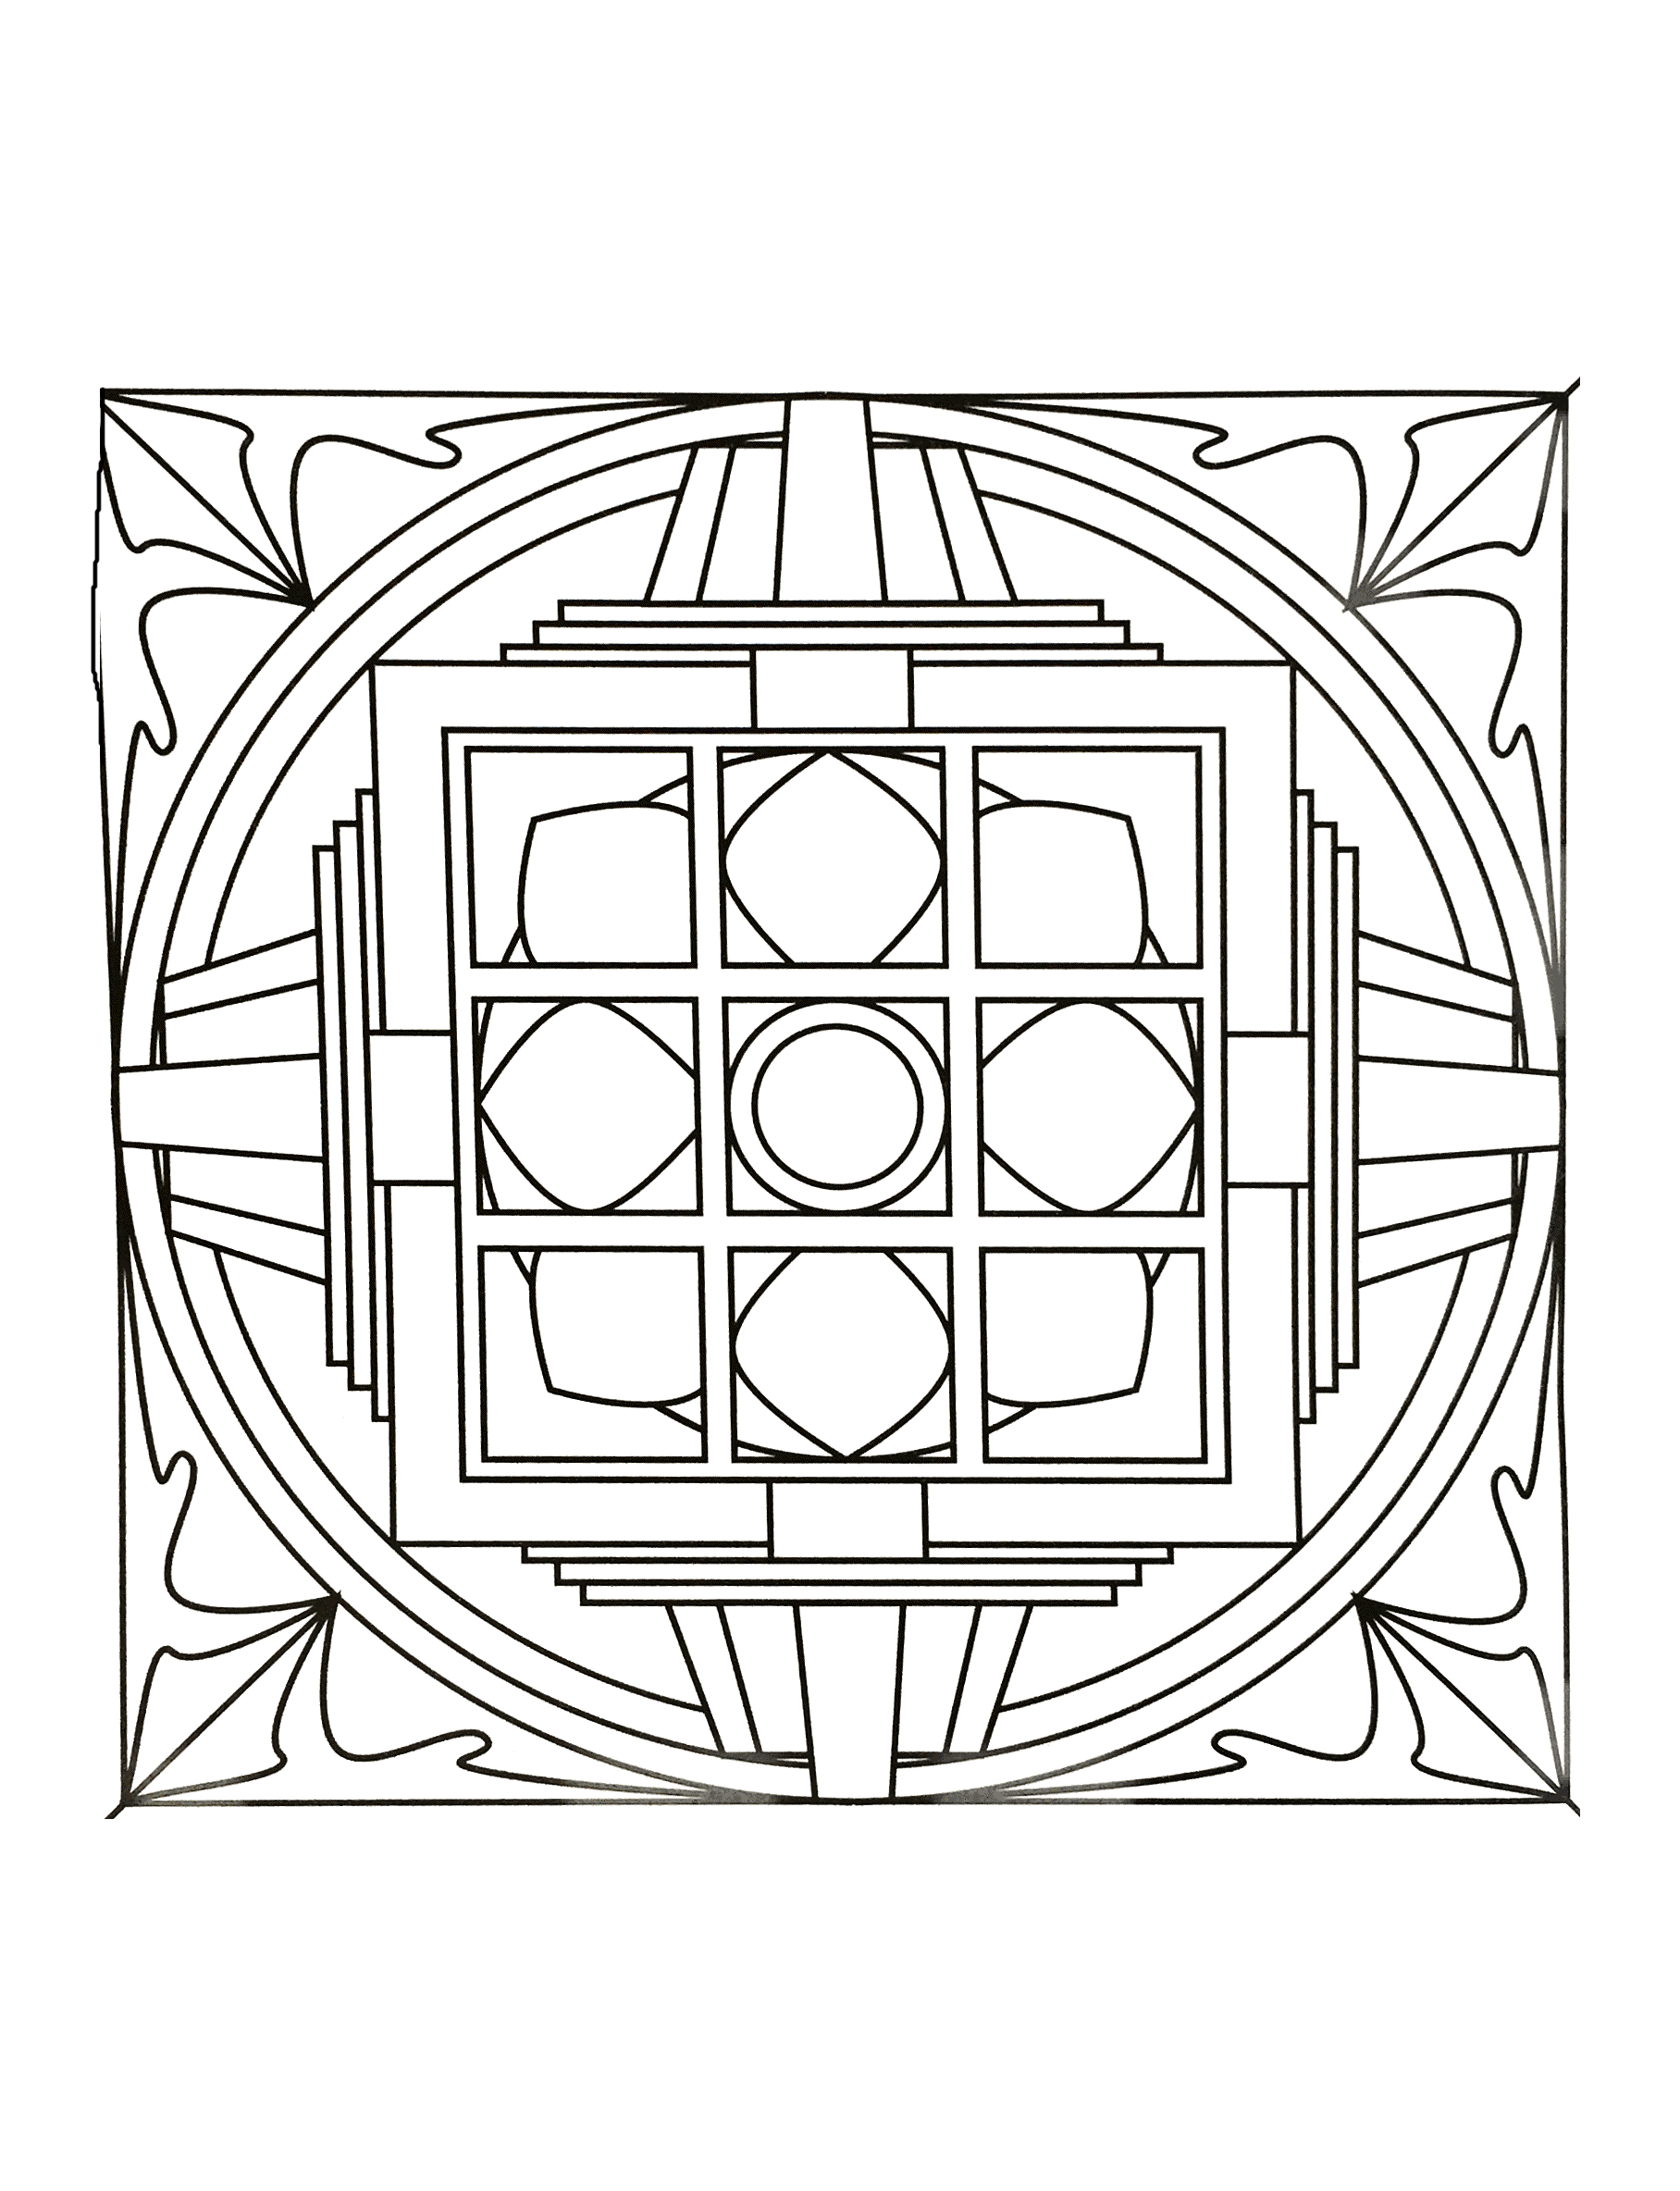 Superbe mandala de forme géométrique où figure plusieurs éléments tels que des losanges, cercles ainsi que des rectangles. Assez simple à colorier.